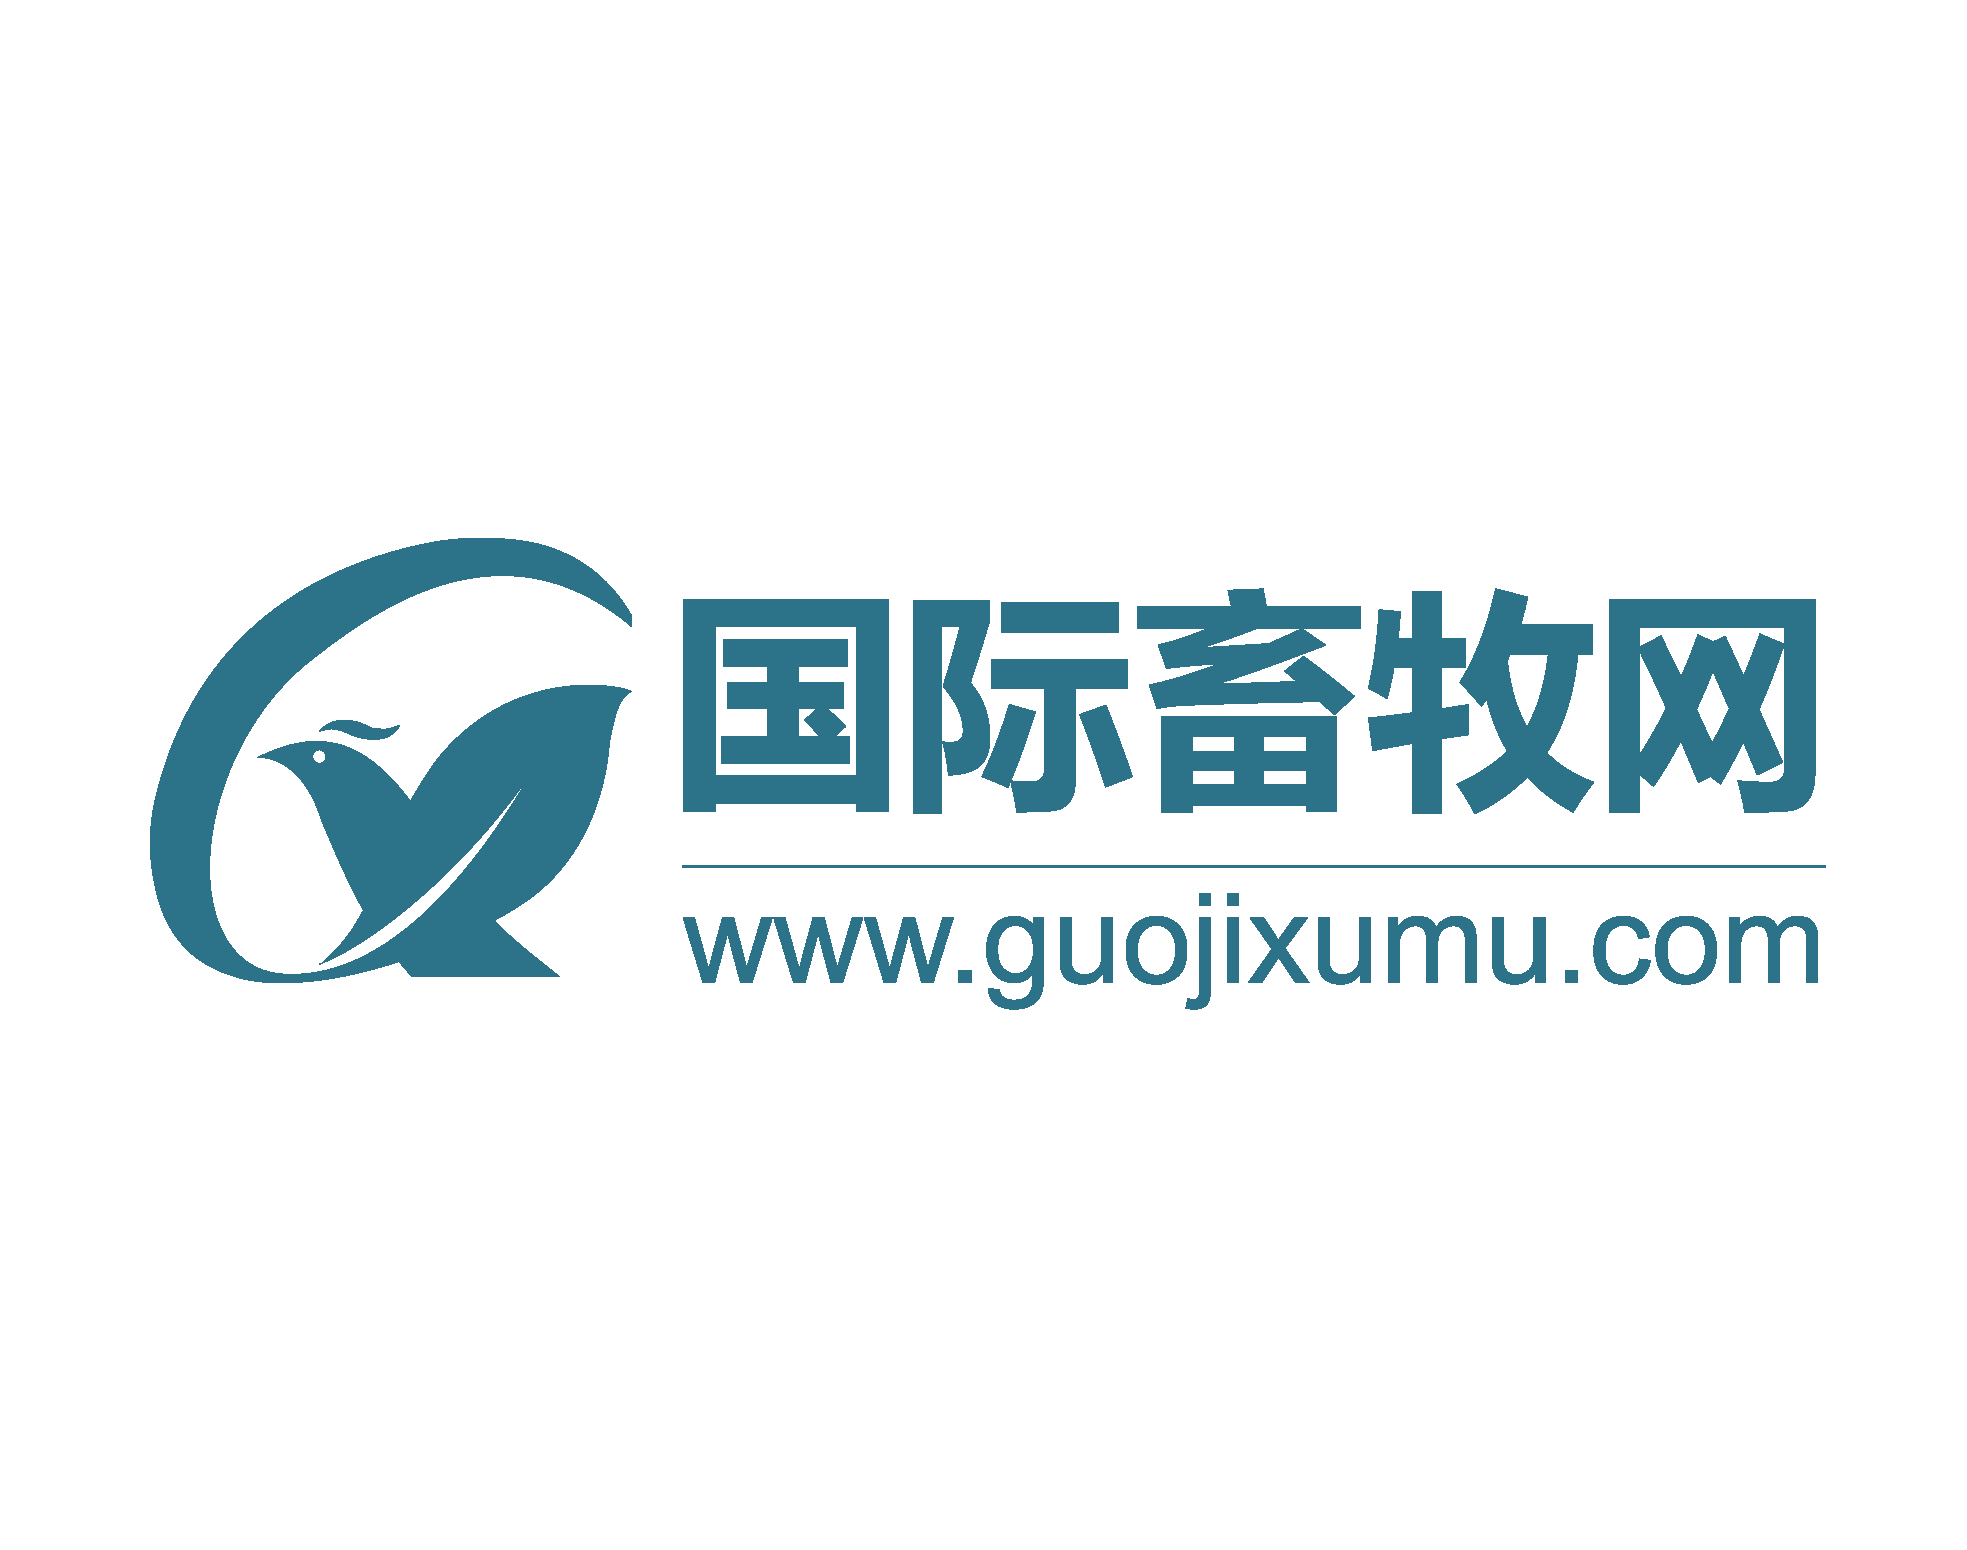 Guojixumu.com